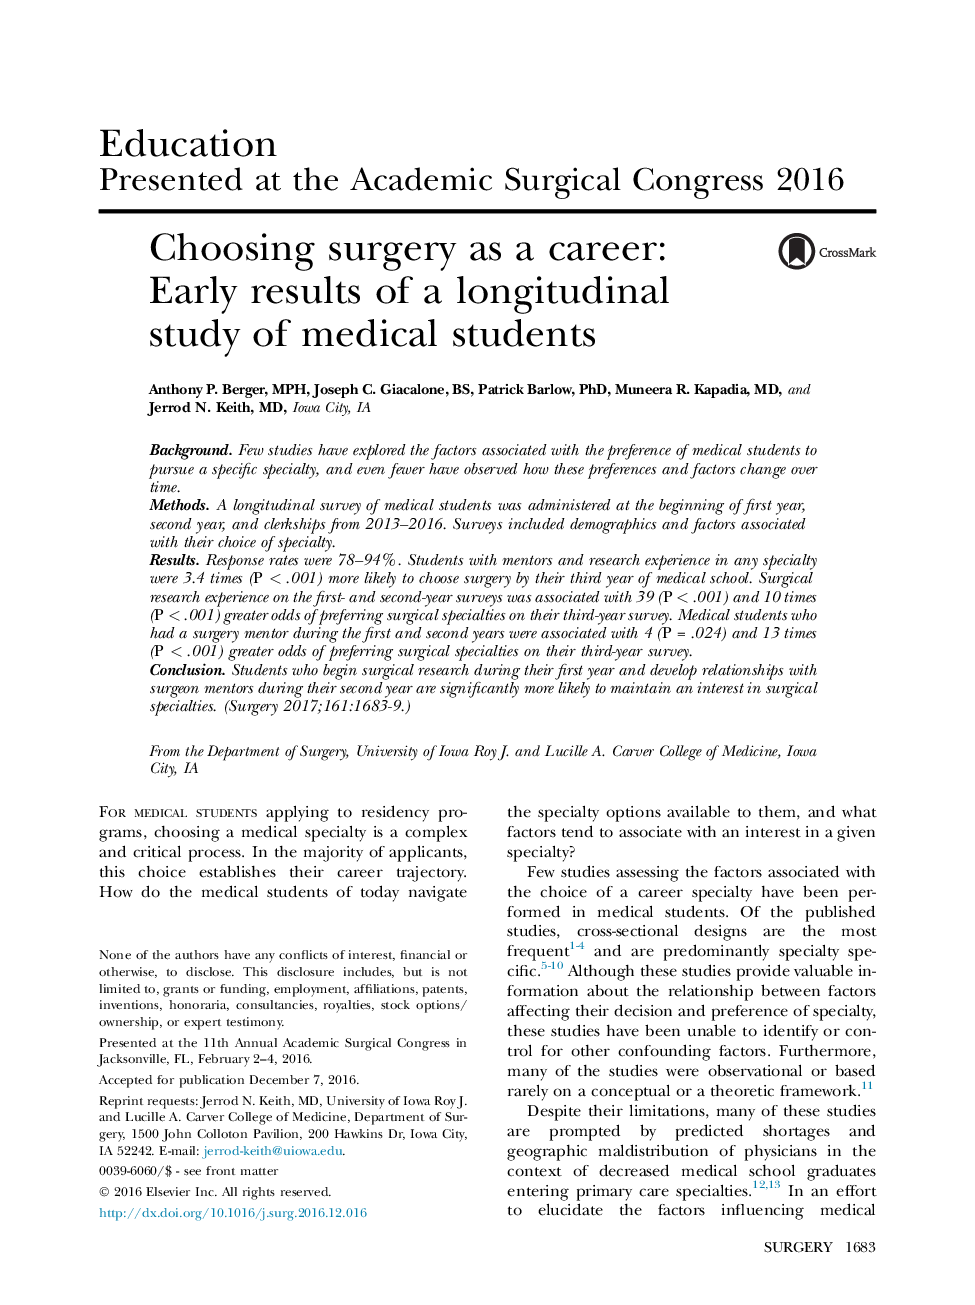 انتخاب جراحی به عنوان یک حرفه: نتایج اولیه مطالعه طولی دانشجویان پزشکی 